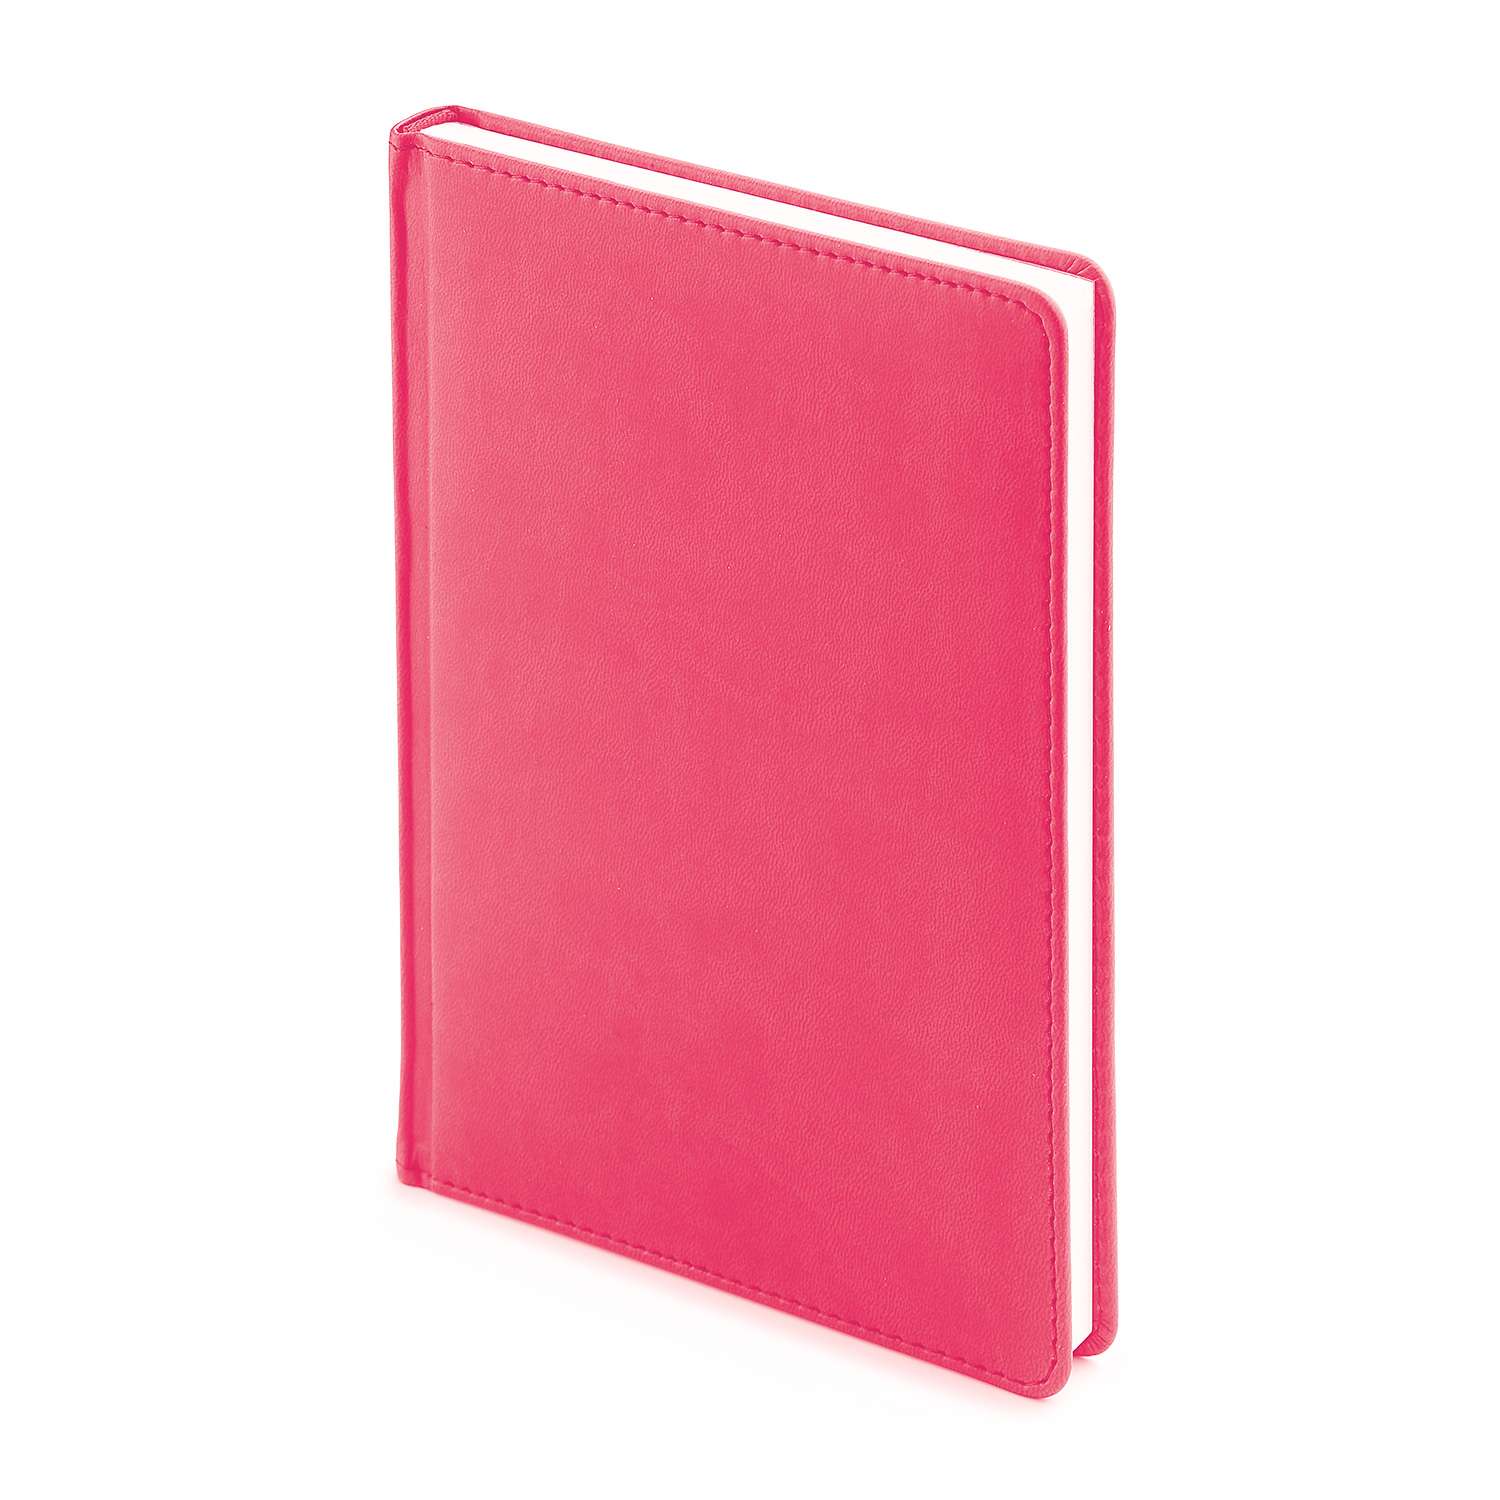 Набор подарочный Альт Velvet розовый А5 145х205 мм ежедневник и ручка - фото 2